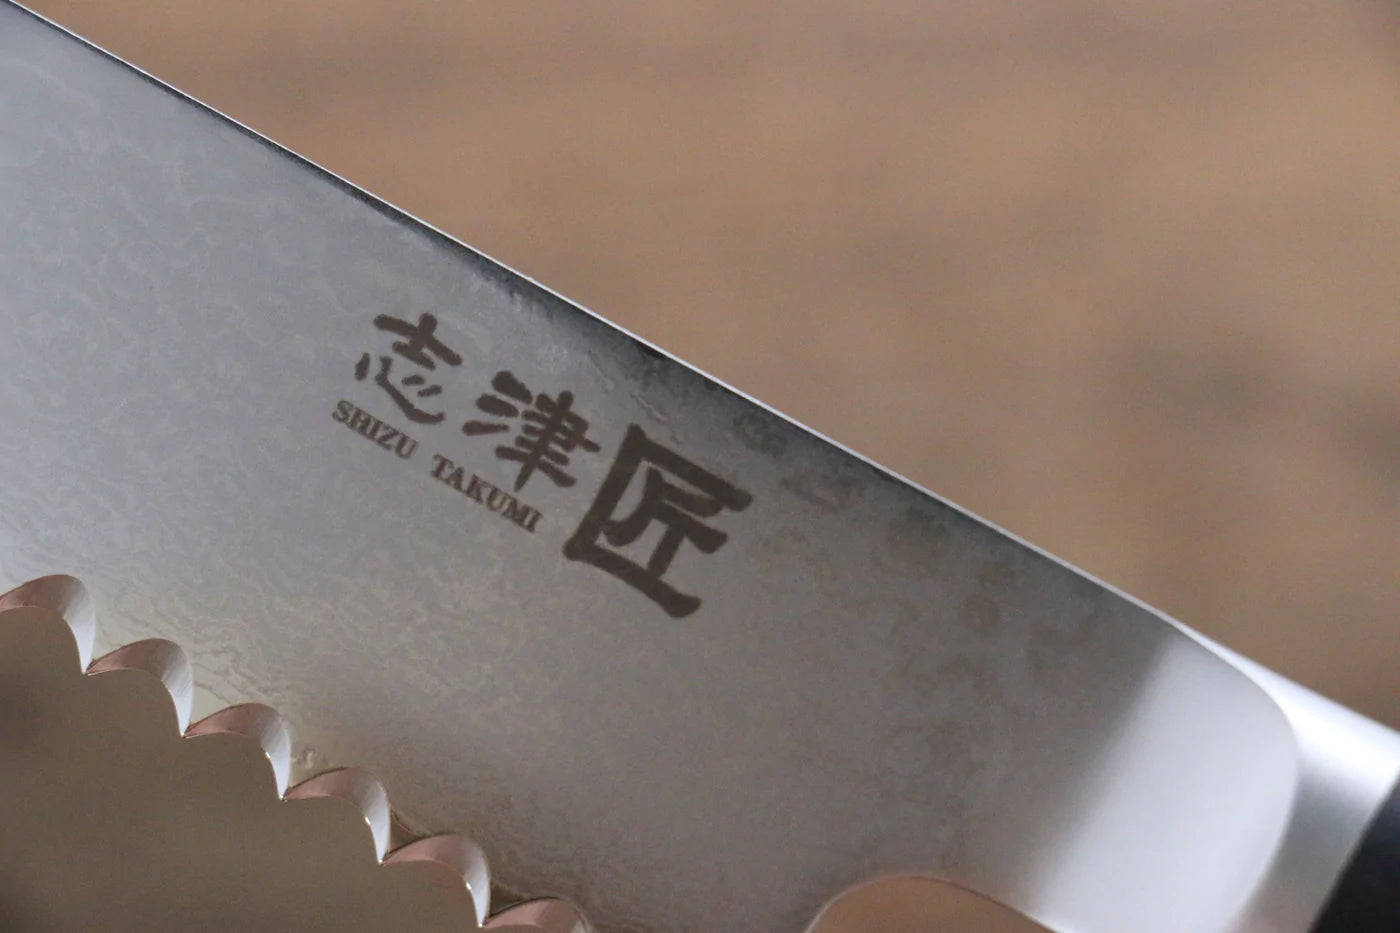 Miyako Marke AUS8 33-lagiger Damaststahl. Spezialisierter Brotschneider, japanisches Messer 240 mm